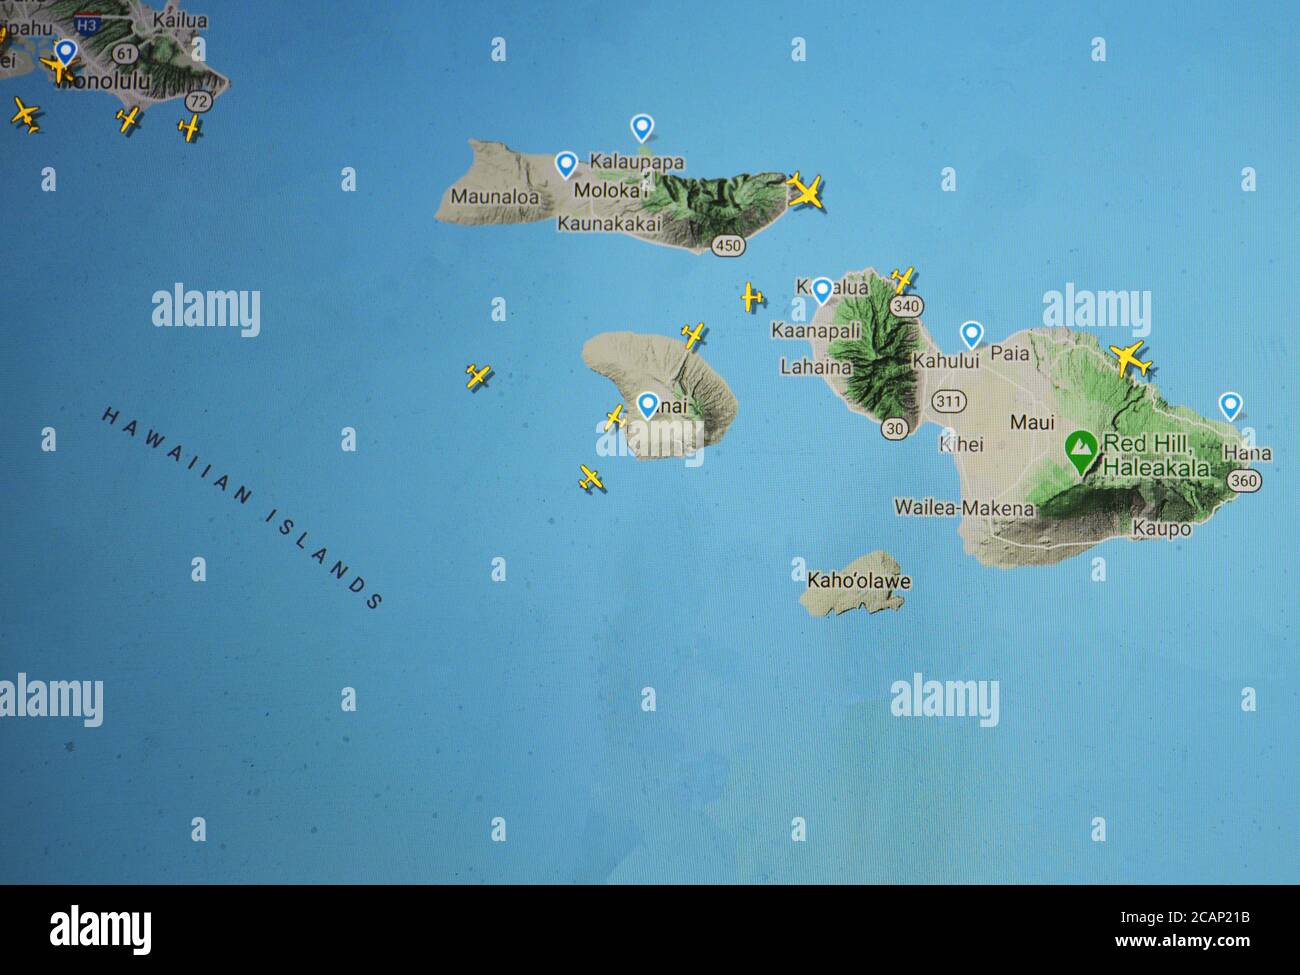 Trafic aérien au-dessus des îles Hawaii (06 août 2020, UTC 18.50) sur Internet avec le site Flightracar 24, pendant la période de pandémie du coronavirus Banque D'Images